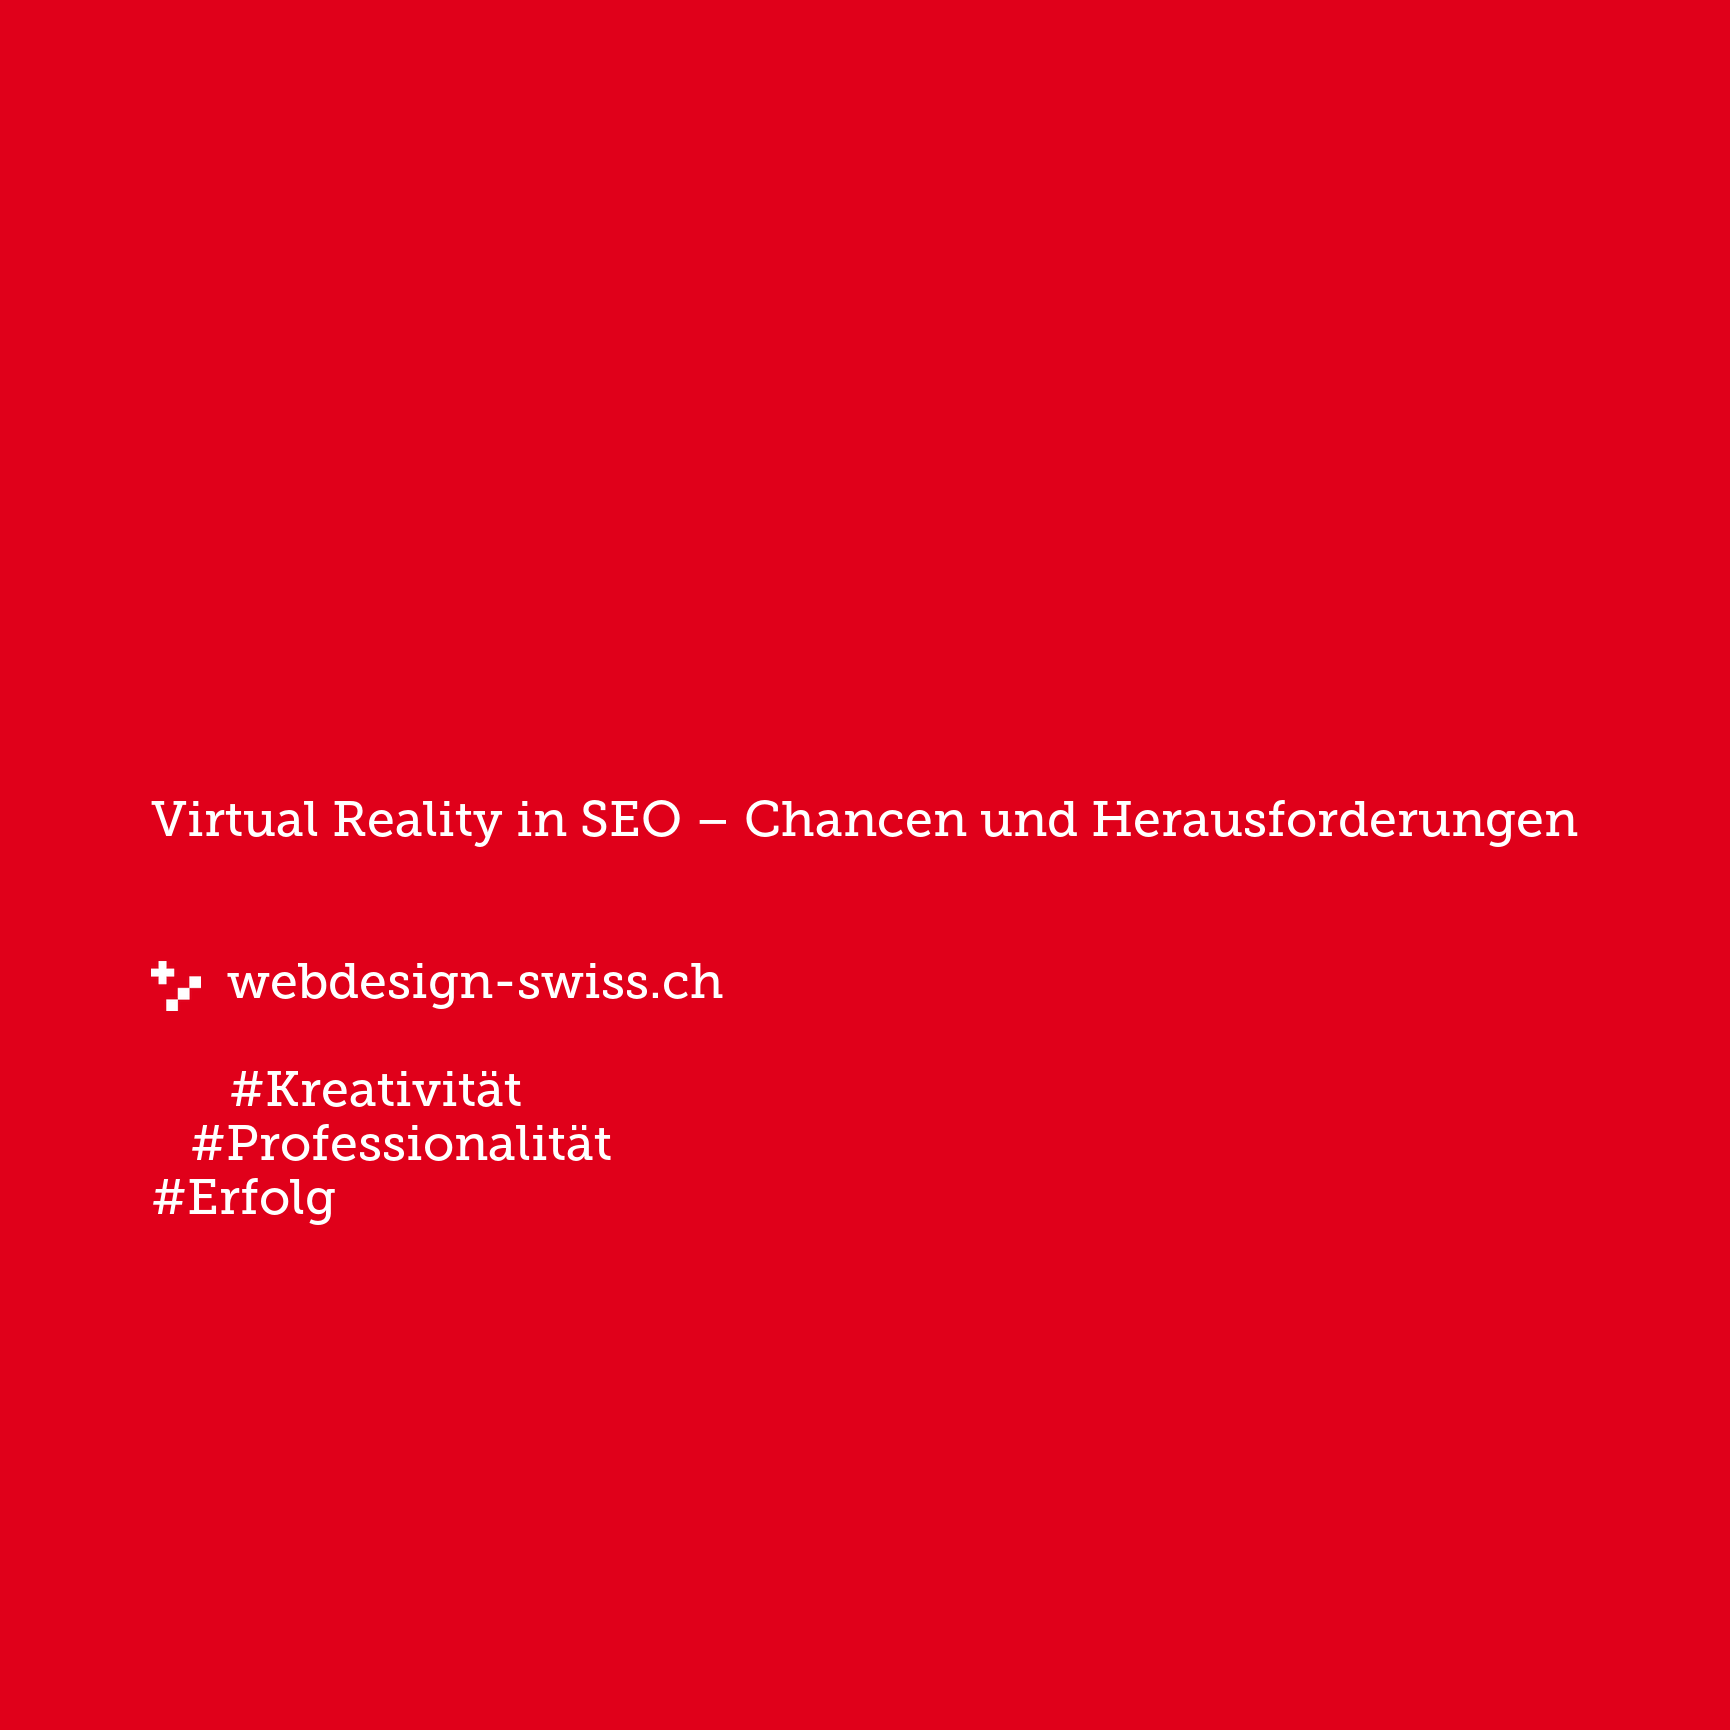 Virtual Reality in SEO – Chancen und Herausforderungen